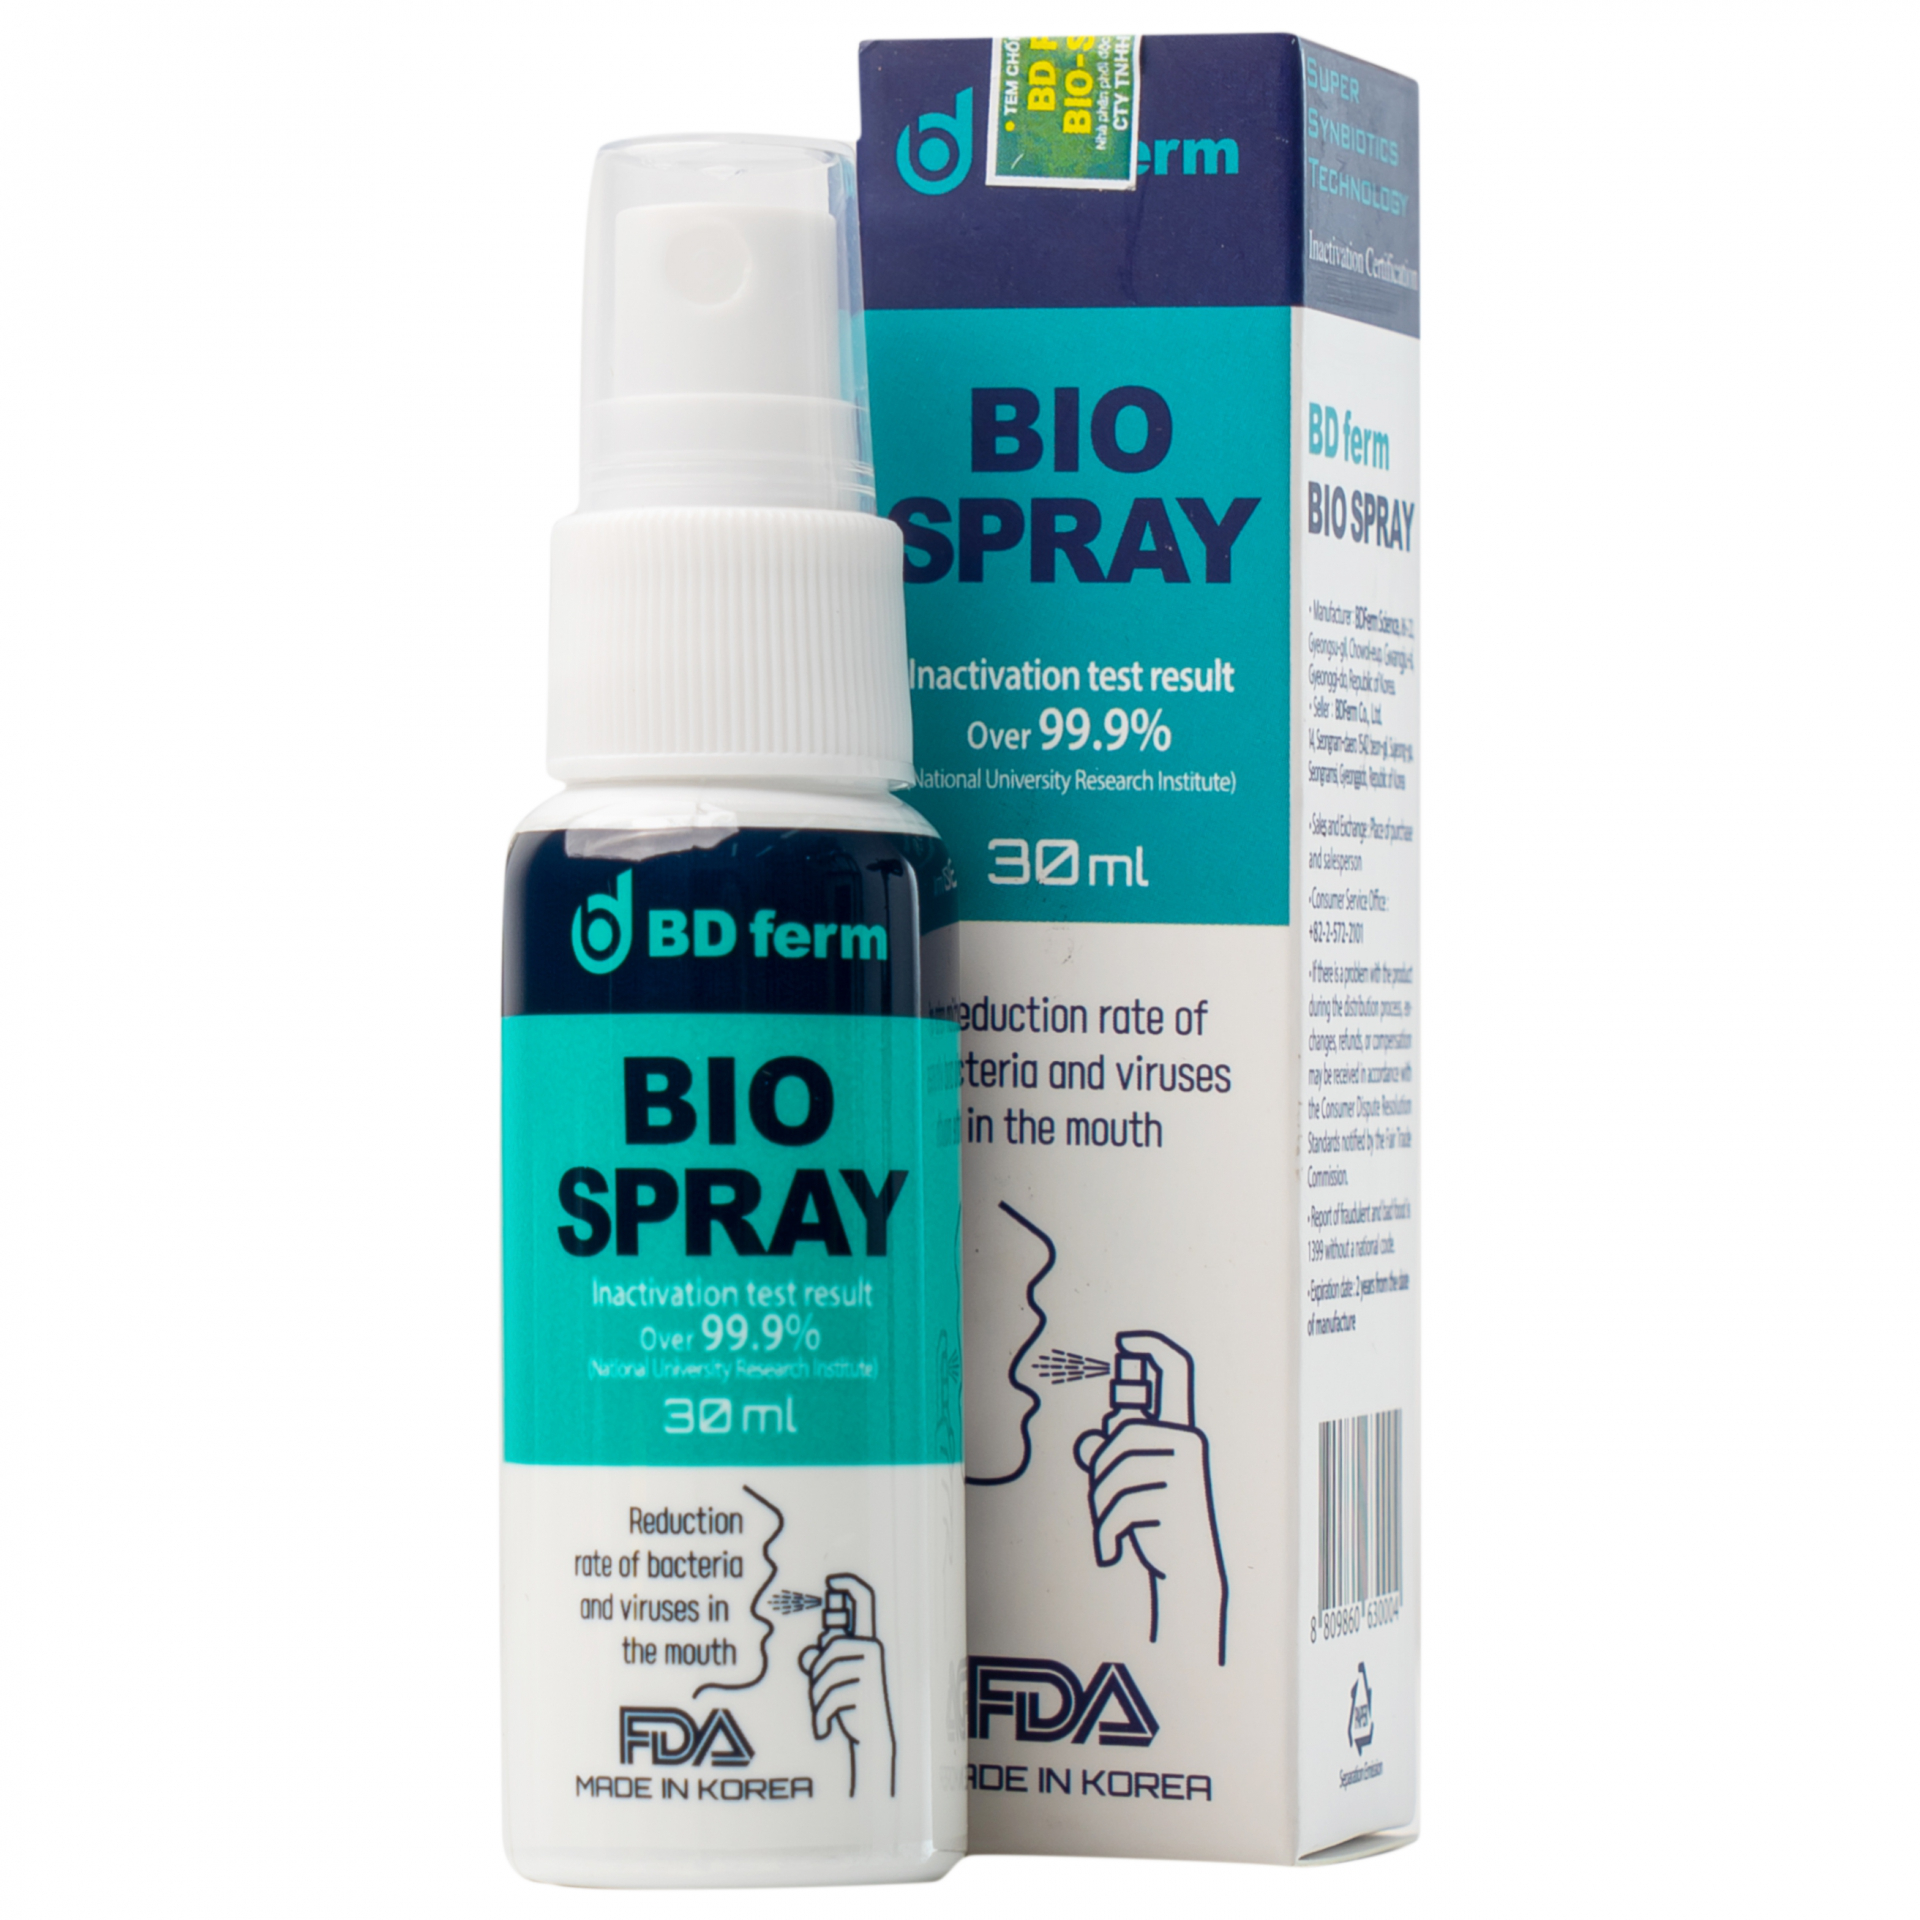 Bio Spray Là Gì? Tìm Hiểu Công Dụng Và Cách Sử Dụng